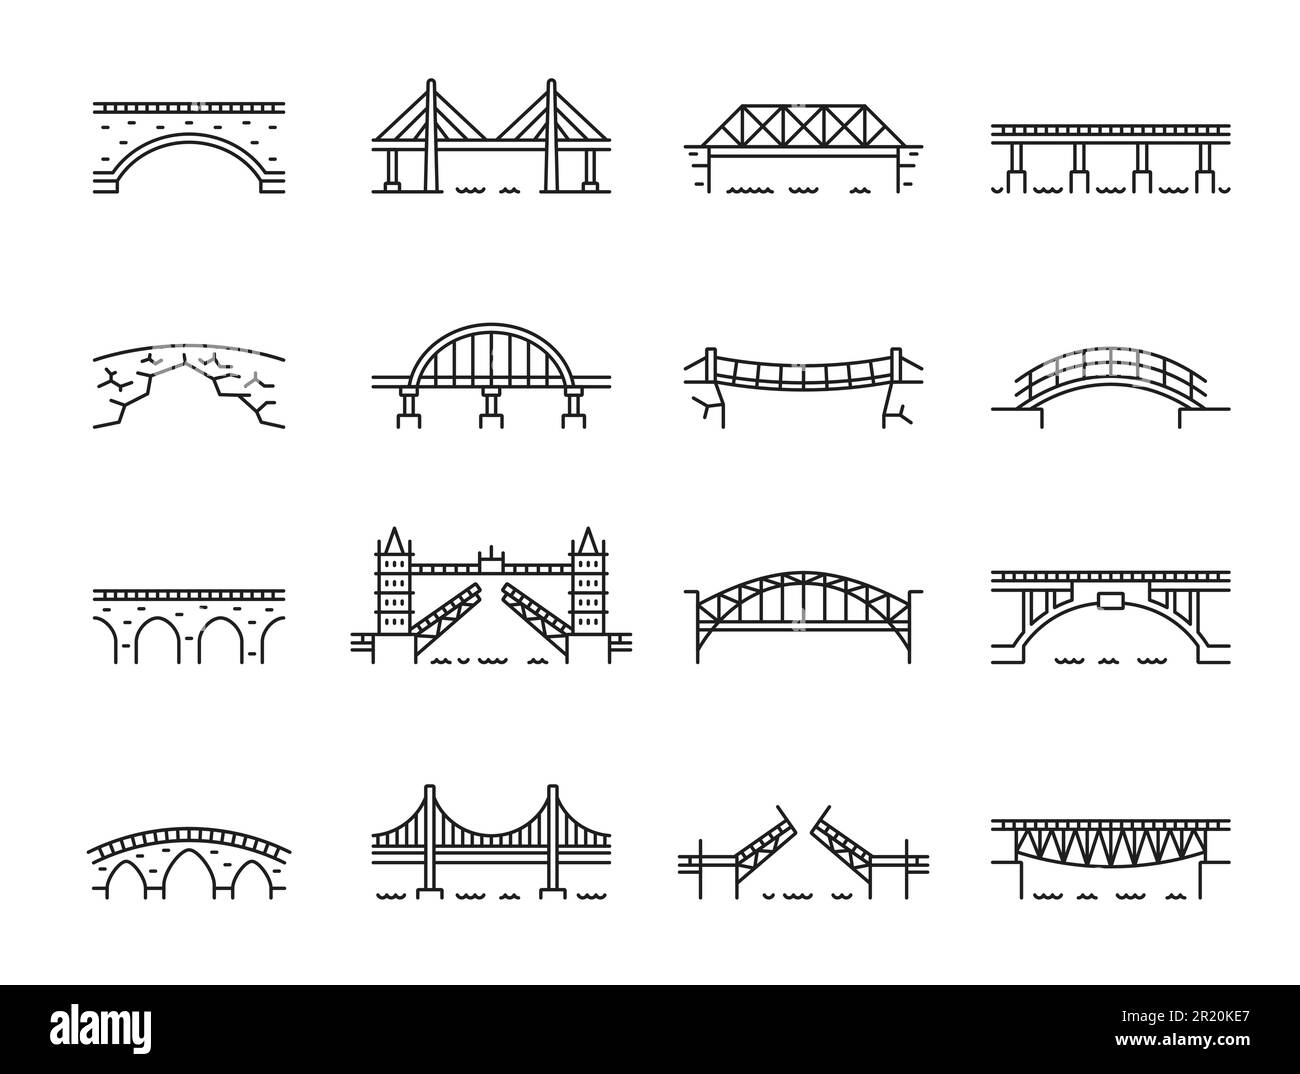 Icone dei ponti di linea, archi di viadotto su ponti di fiume o di ferrovia, simboli vettoriali. Costruzione e costruzione delineano le icone del ponte sospeso o del ponte levatoio della città e dell'architettura del cancello a torre Illustrazione Vettoriale